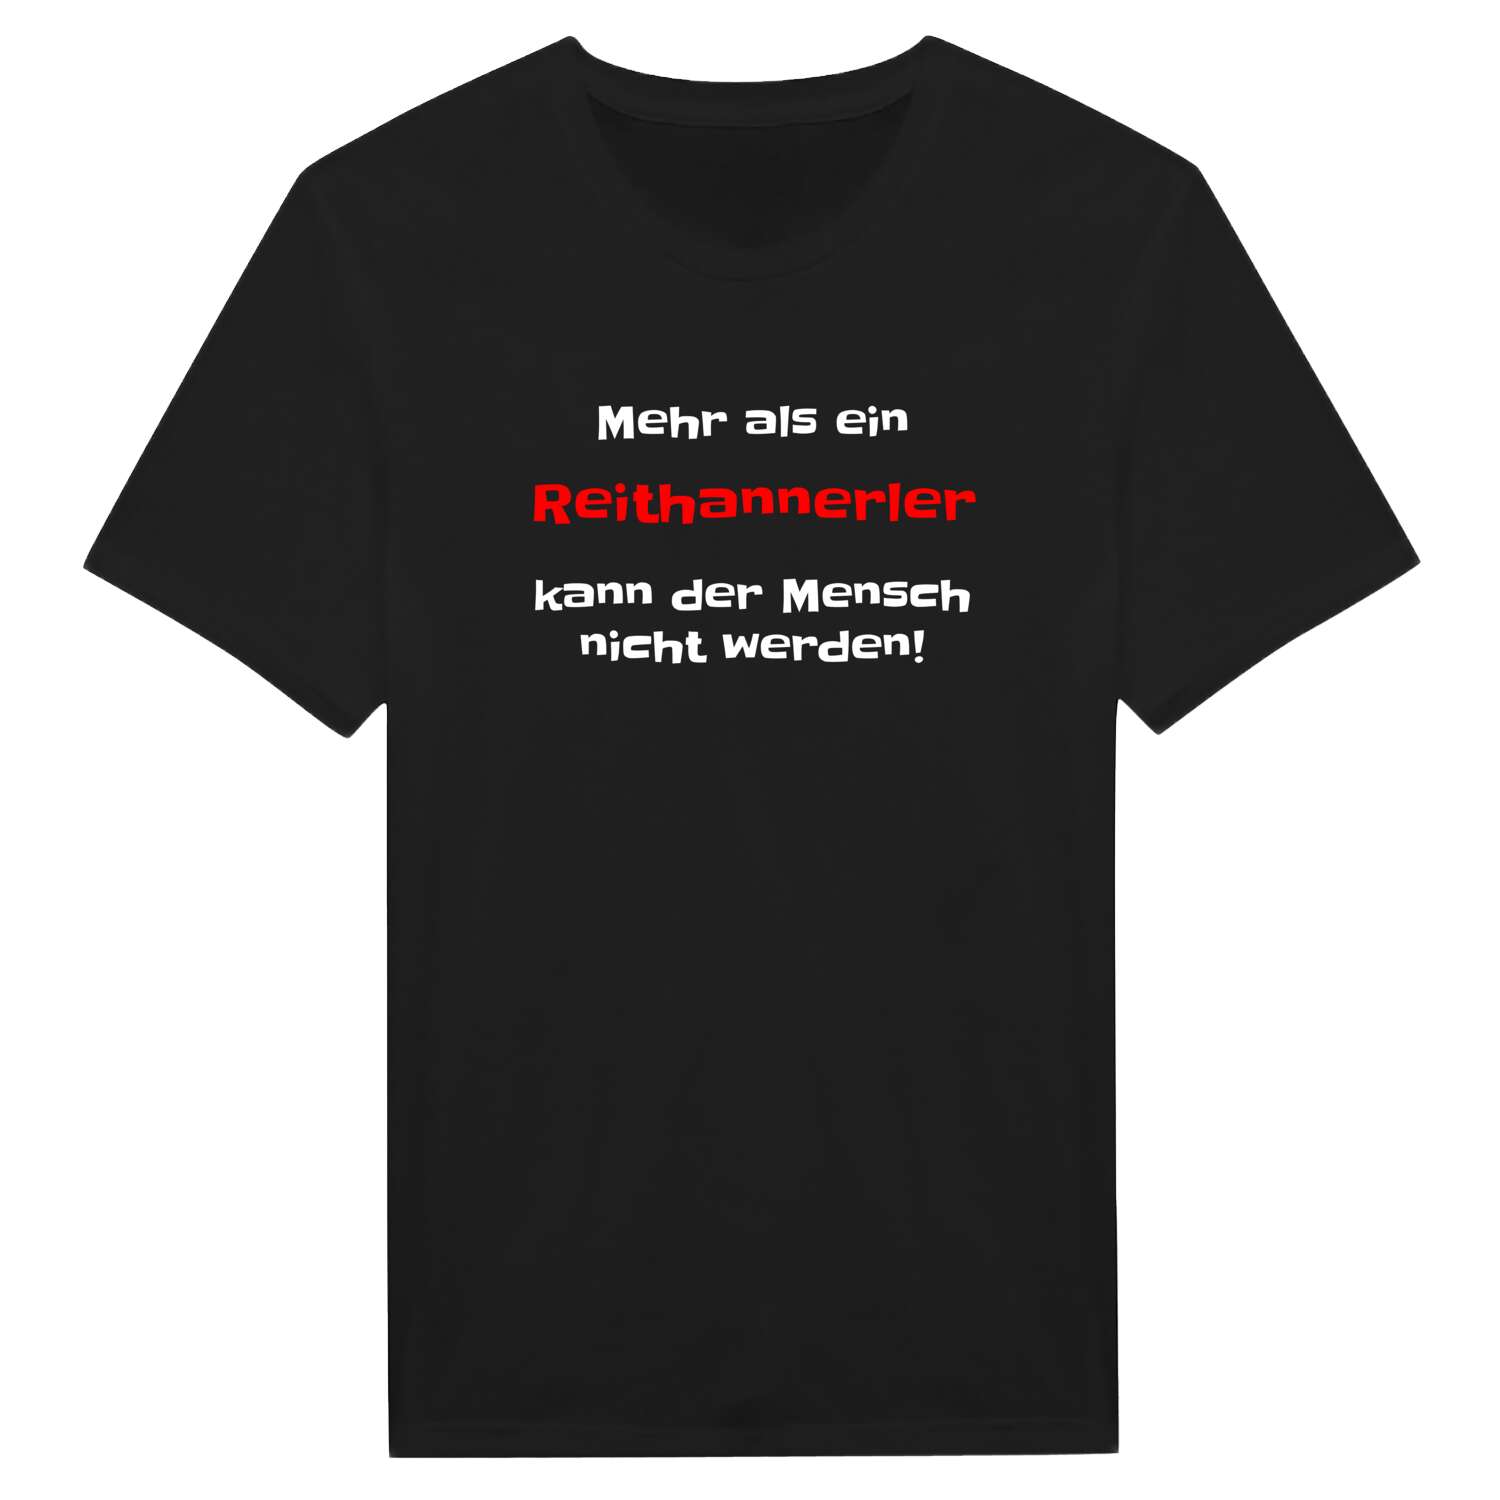 Reithannerl T-Shirt »Mehr als ein«